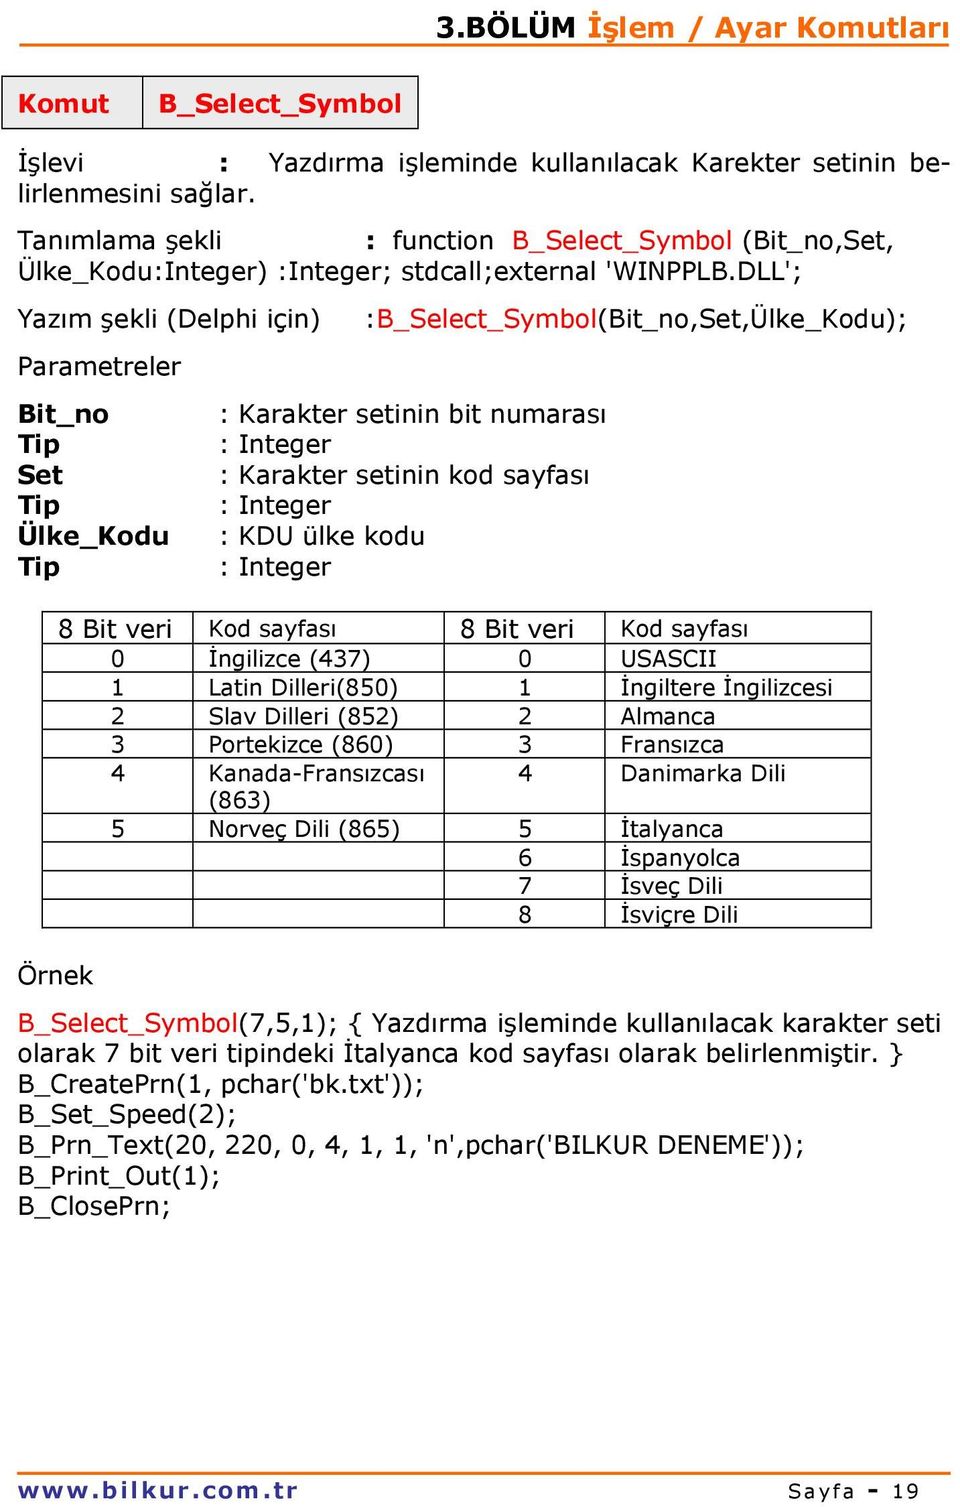 DLL'; Yazım şekli (Delphi için) :B_Select_Symbol(Bit_no,Set,Ülke_Kodu); Bit_no : Karakter setinin bit numarası Set : Karakter setinin kod sayfası Ülke_Kodu : KDU ülke kodu 8 Bit veri Kod sayfası 8